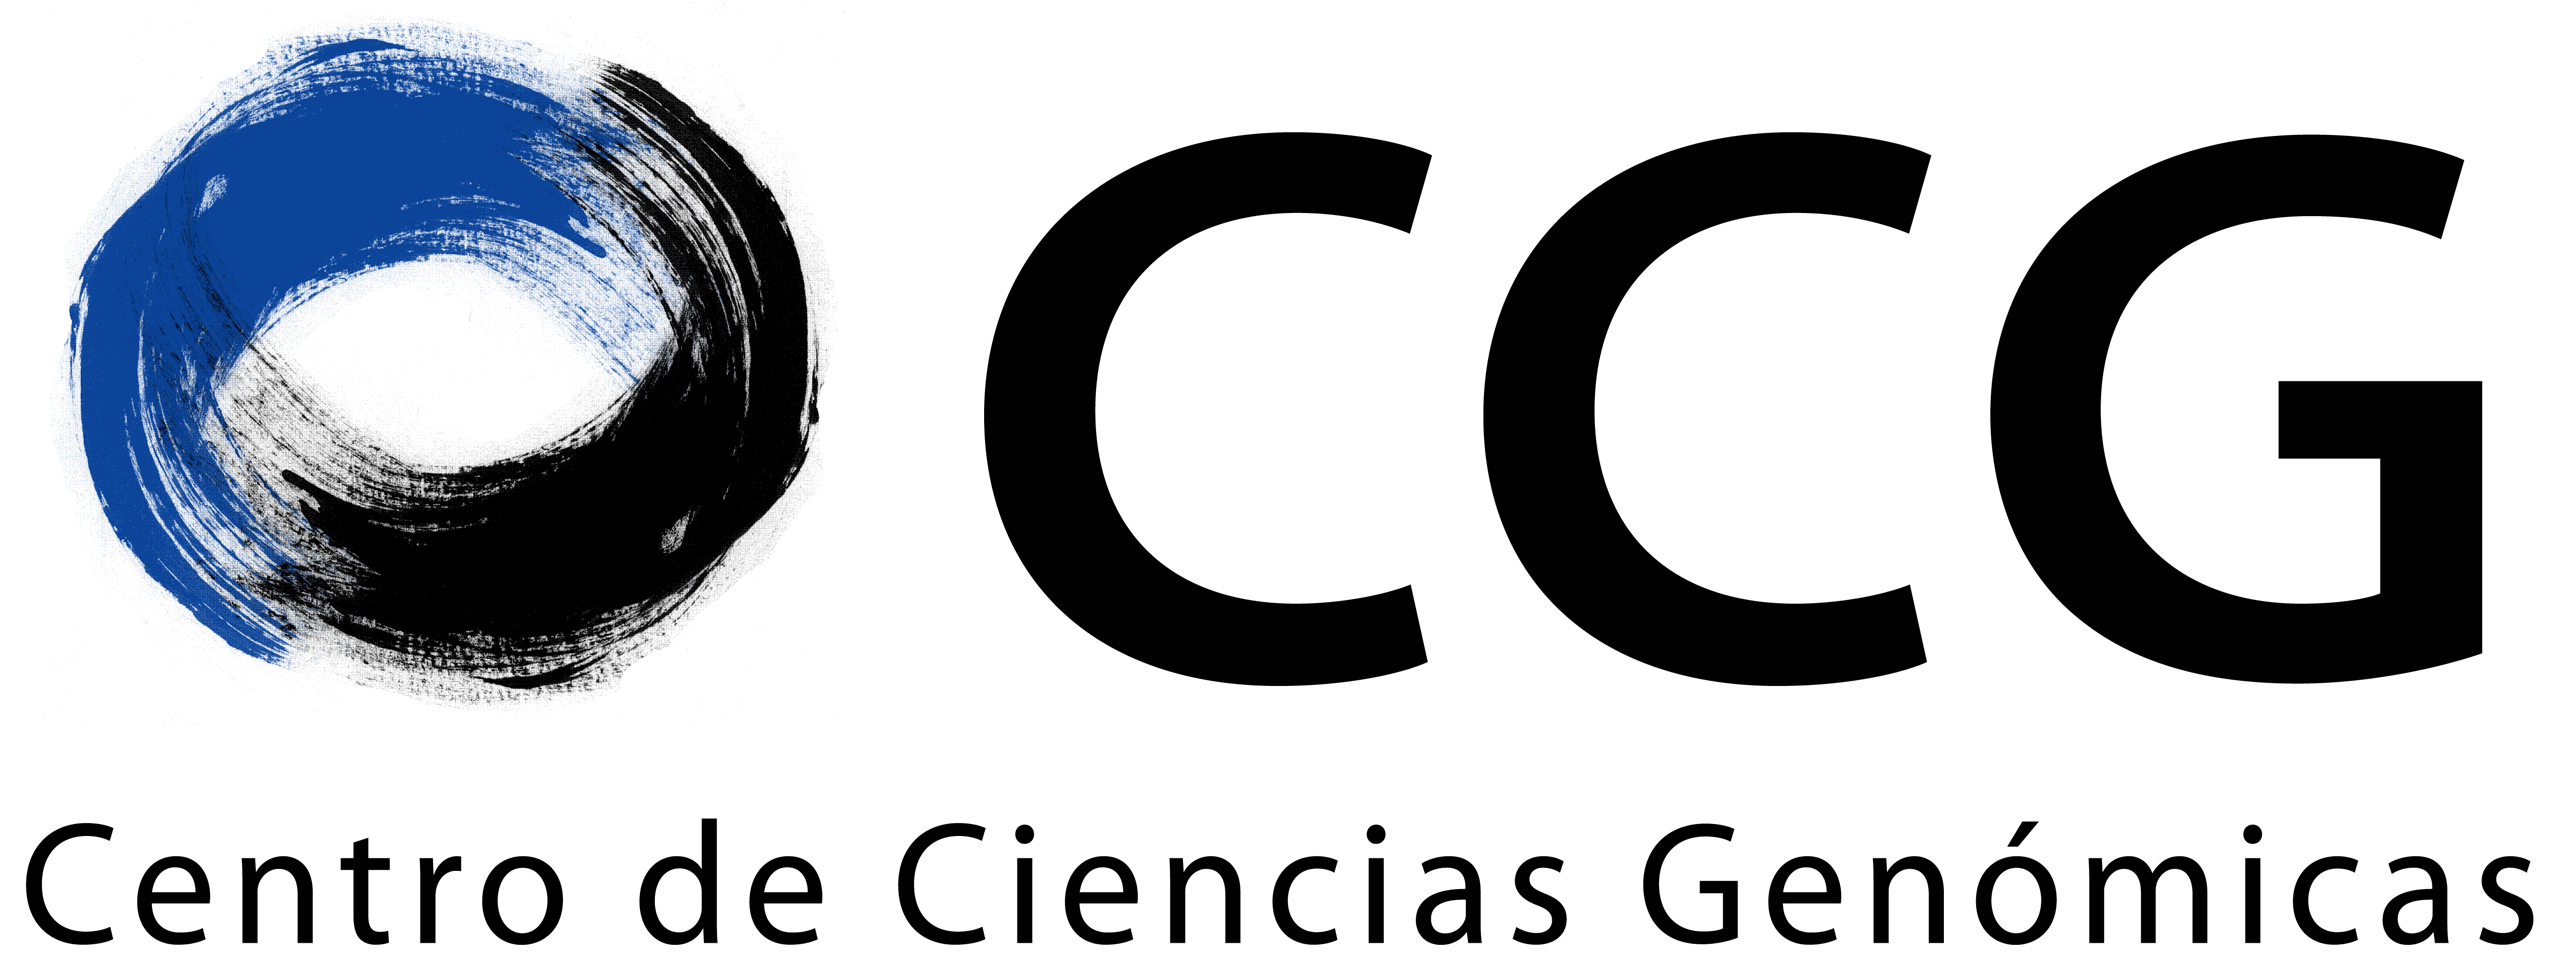 UnamgenomicsCCG Logo HR.jpg